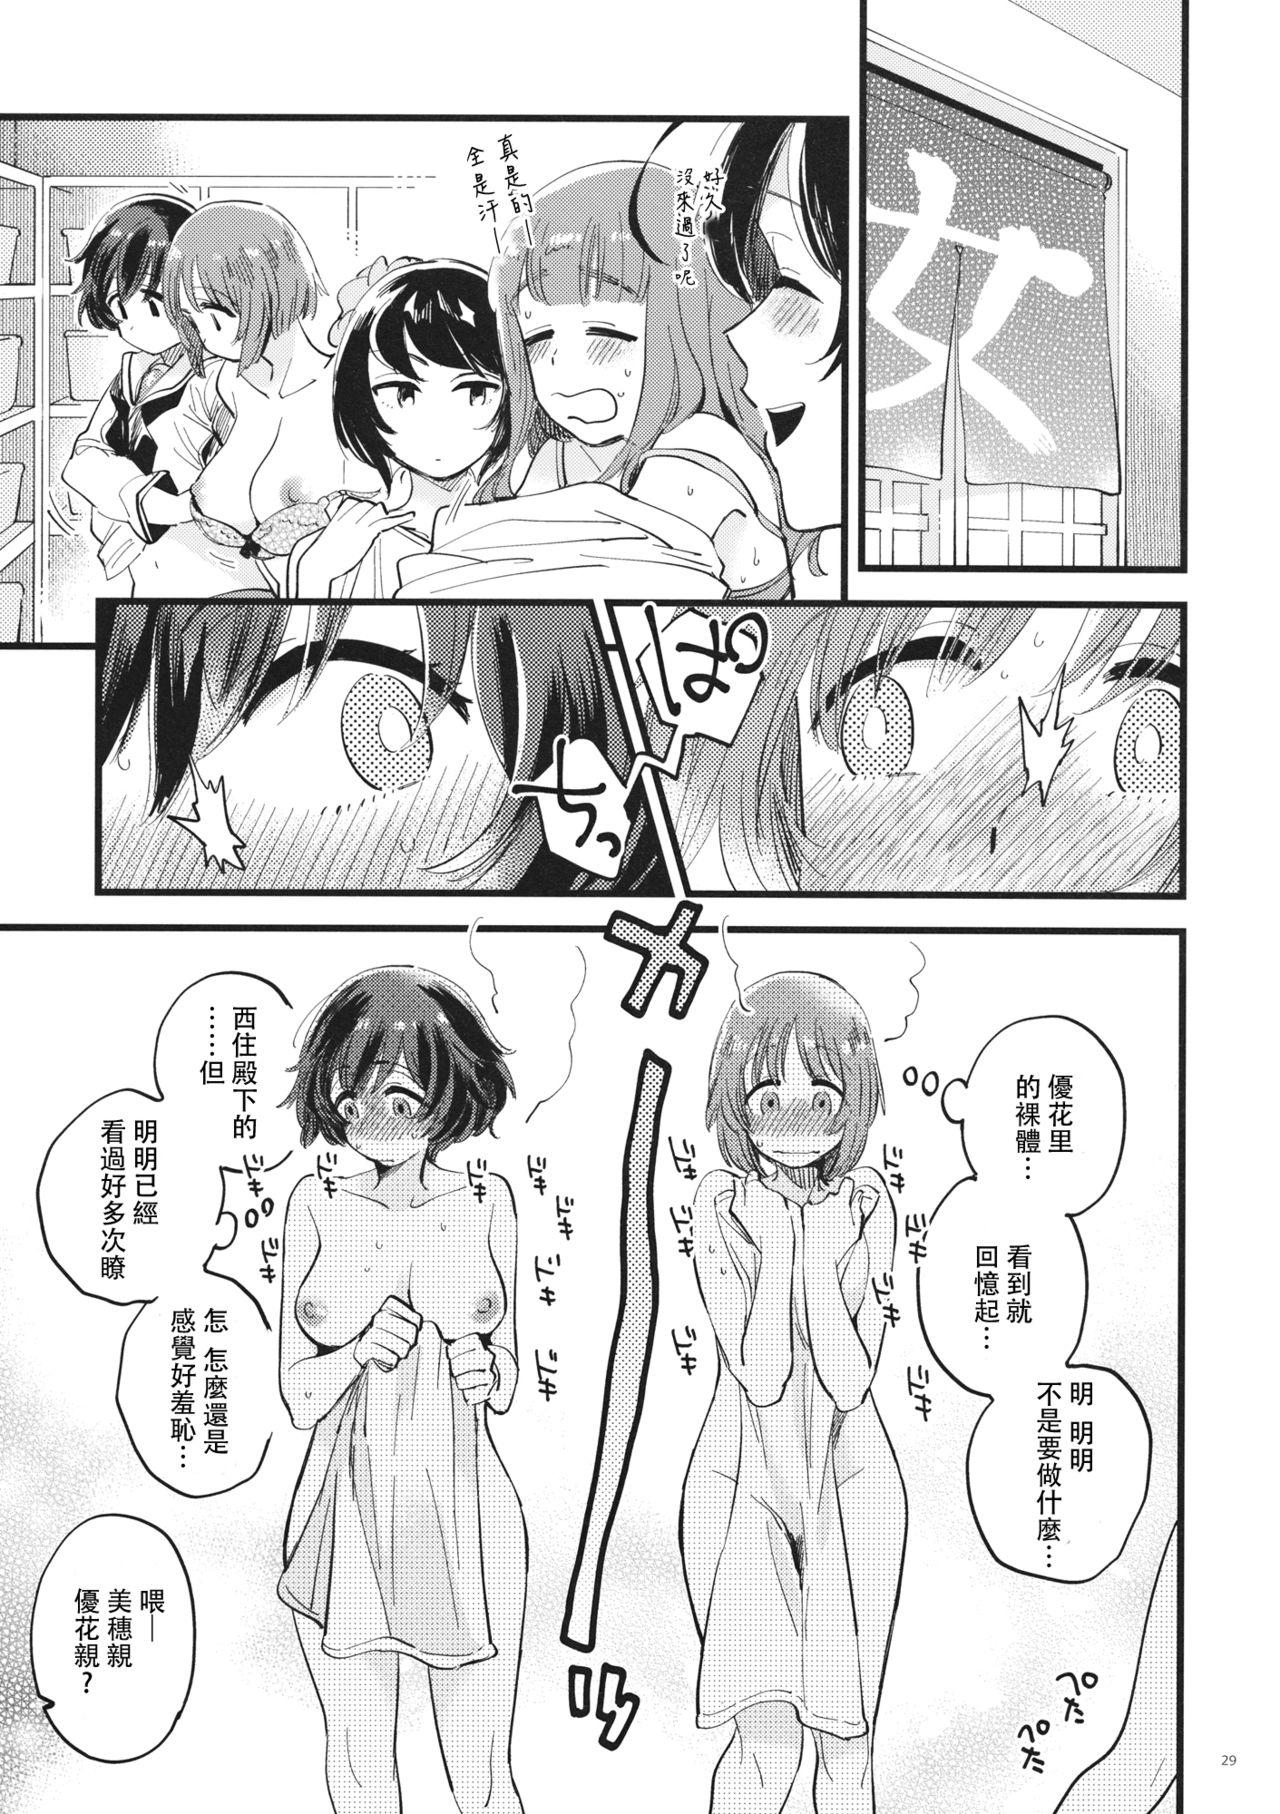 Chubby Yasashiku, Sawatte, Oku made Furete. - Girls und panzer Step Brother - Page 29